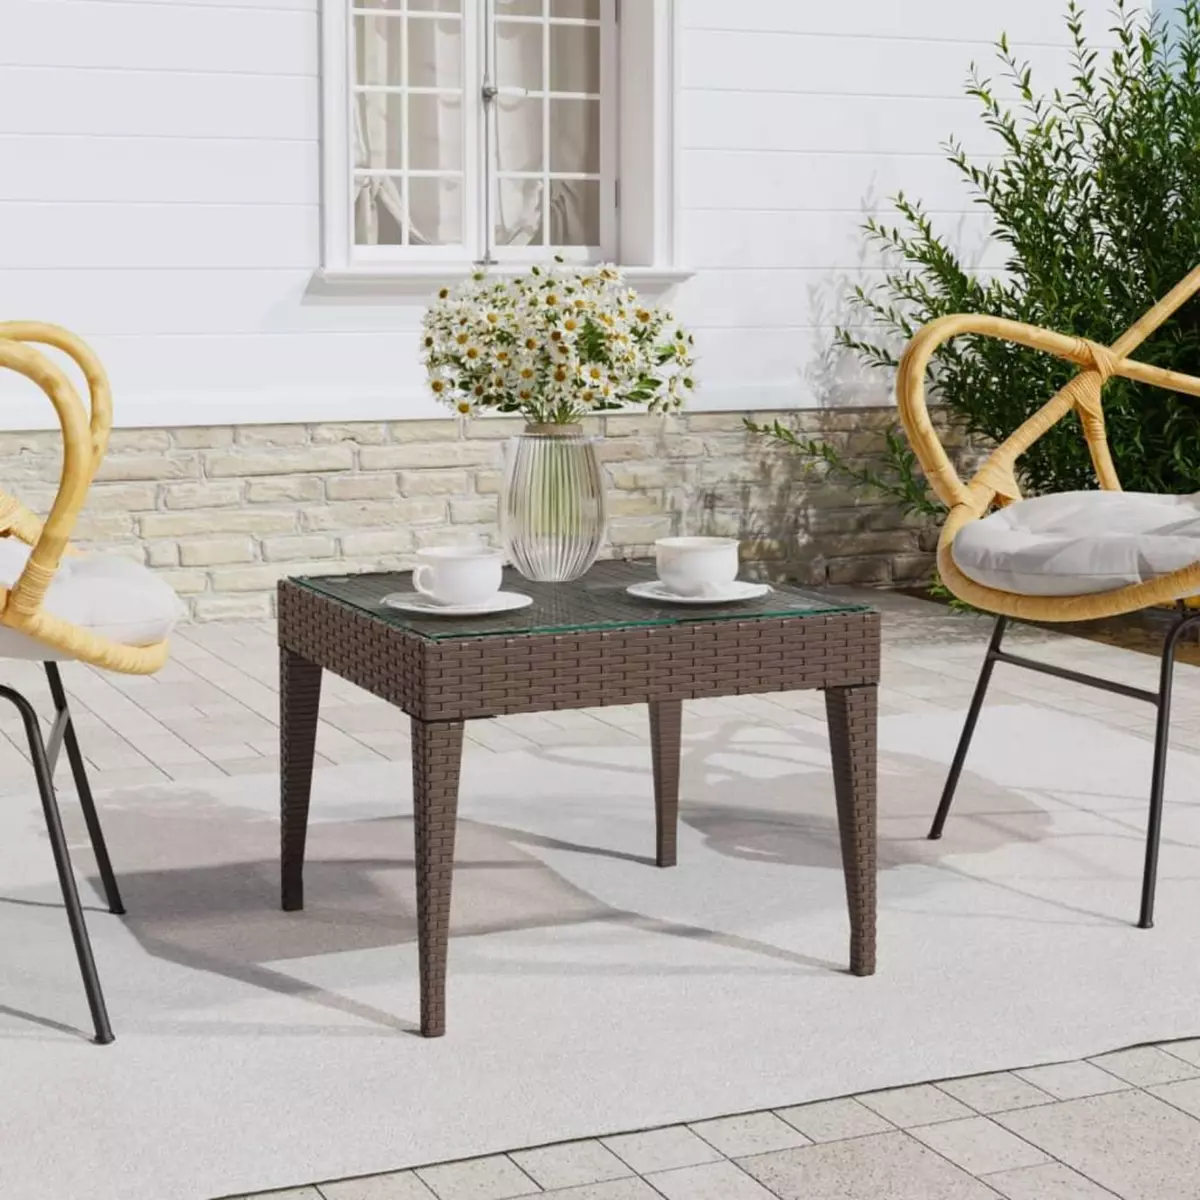 VIDAXL Table d'appoint marron 50x50x38 cm poly rotin et verre trempe